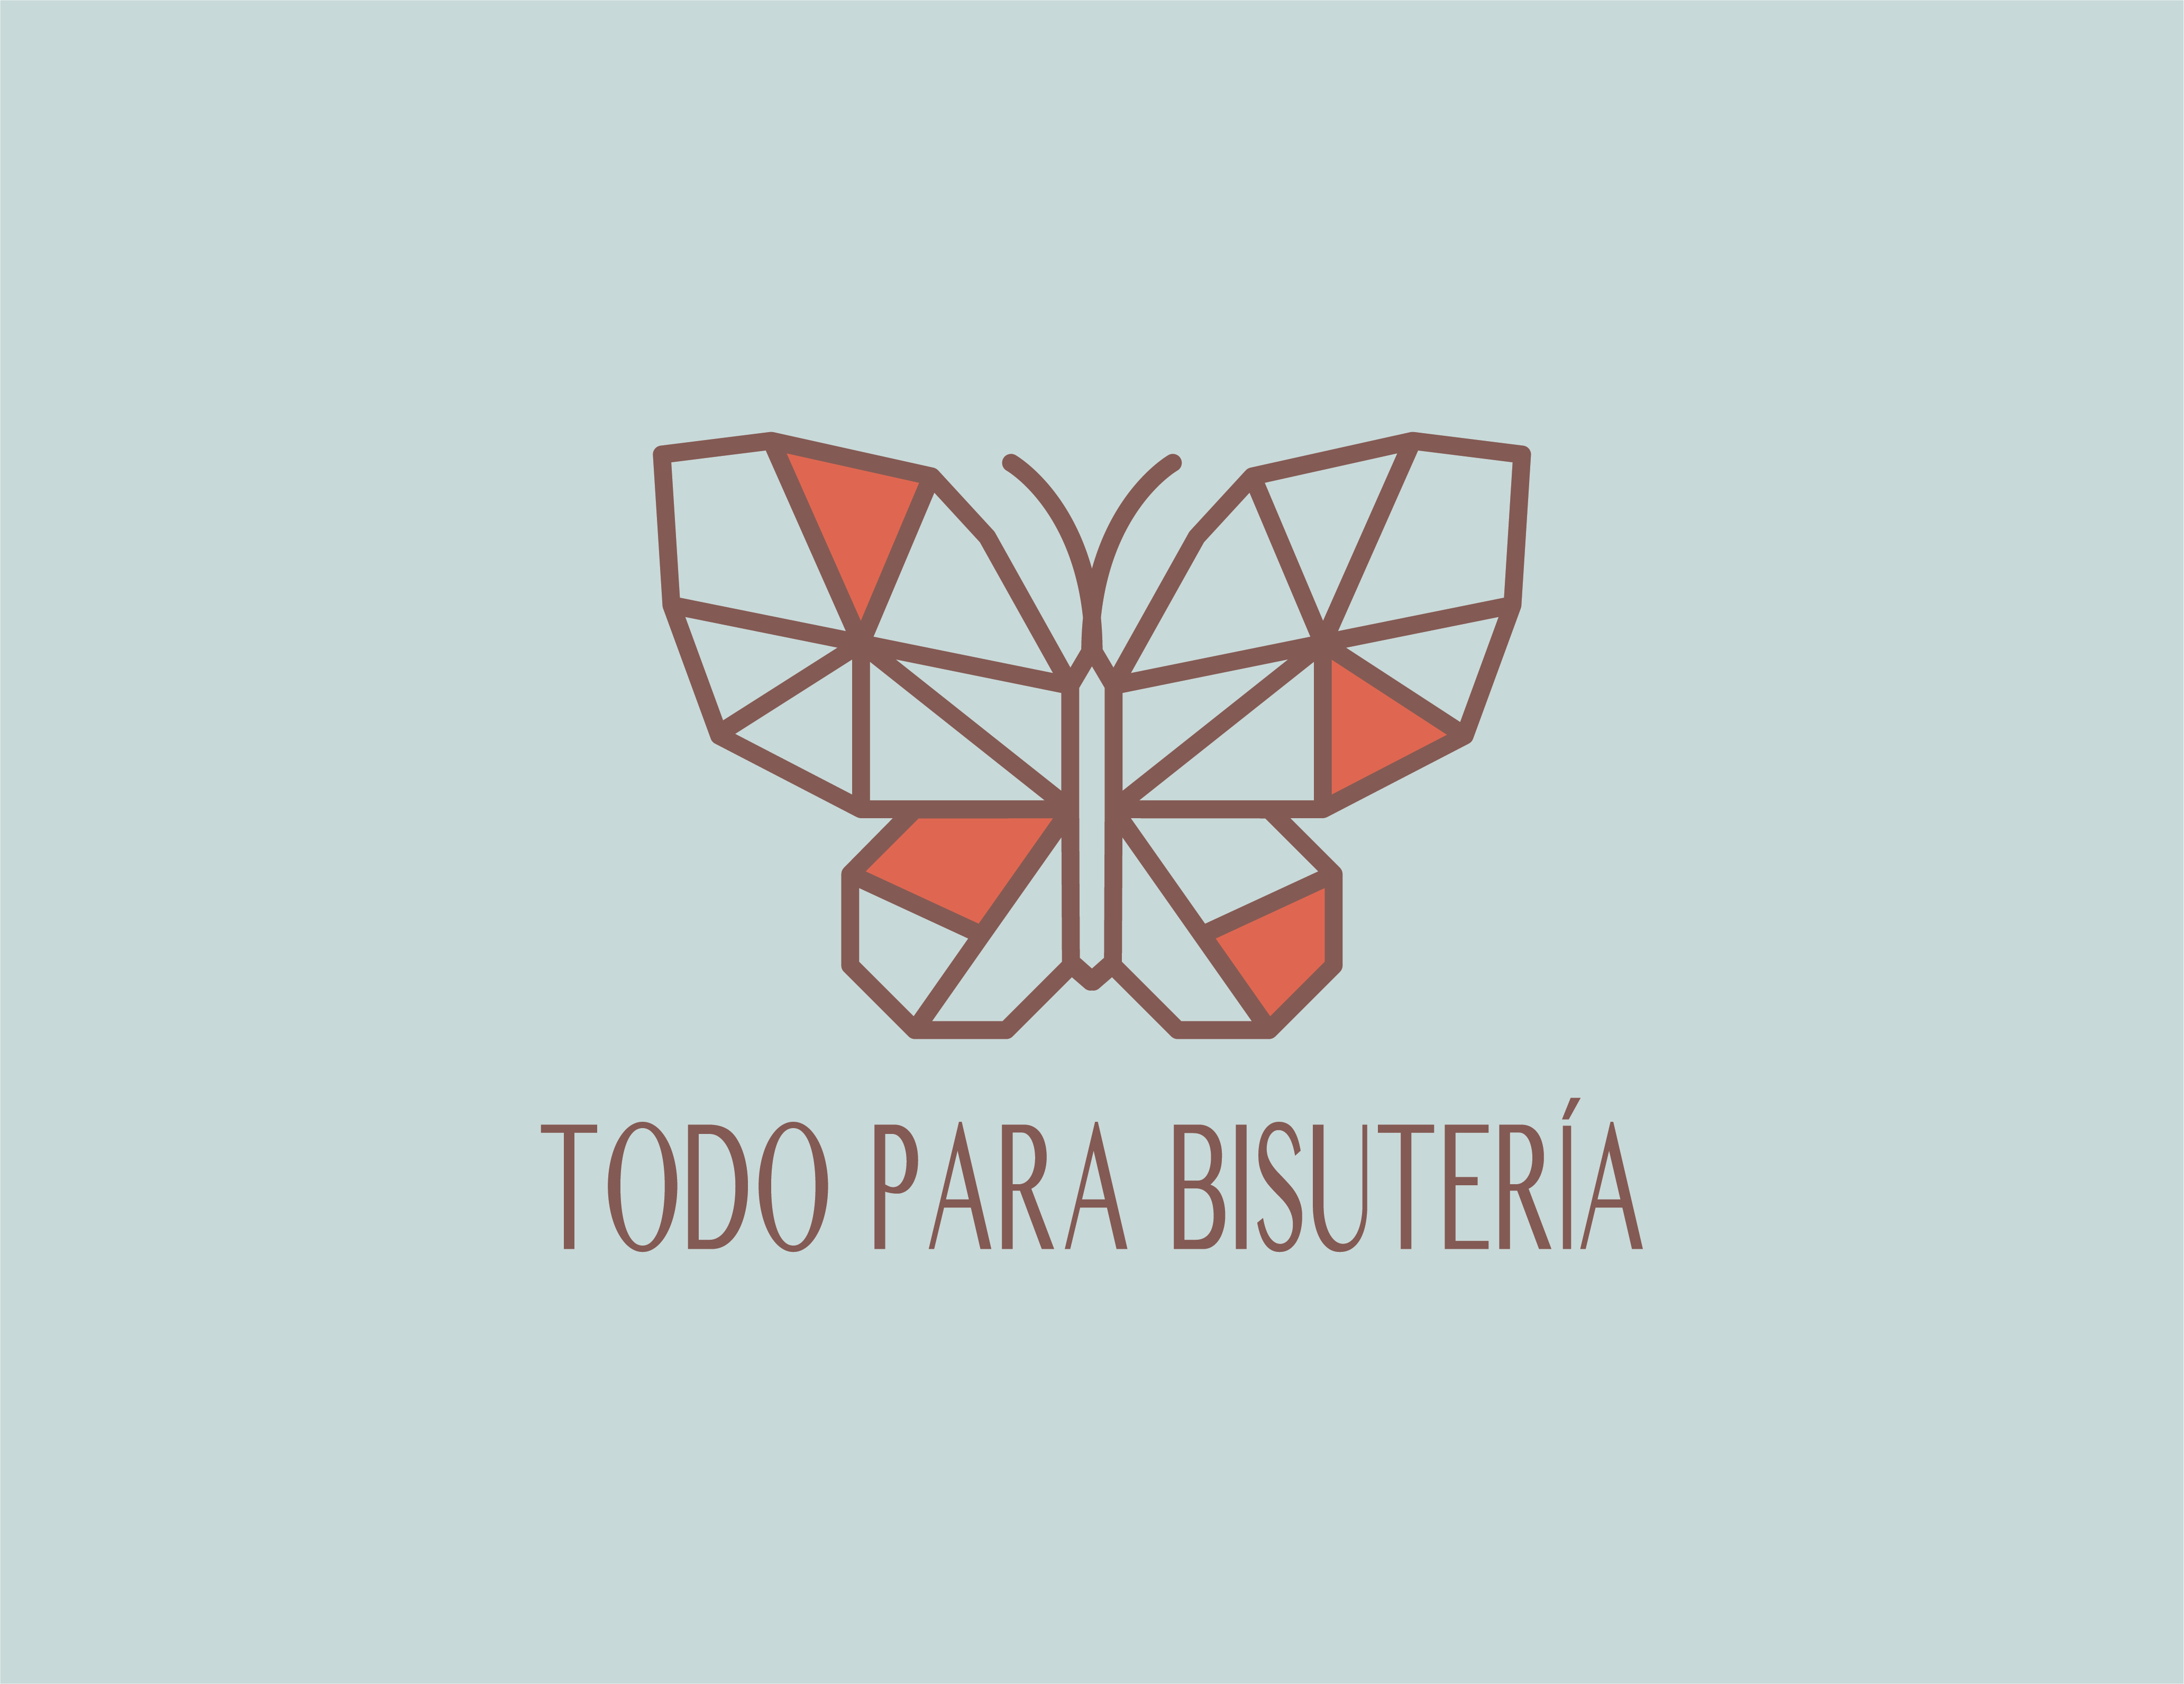 TODO PARA BISUTERIA – todoparabisuteria.com